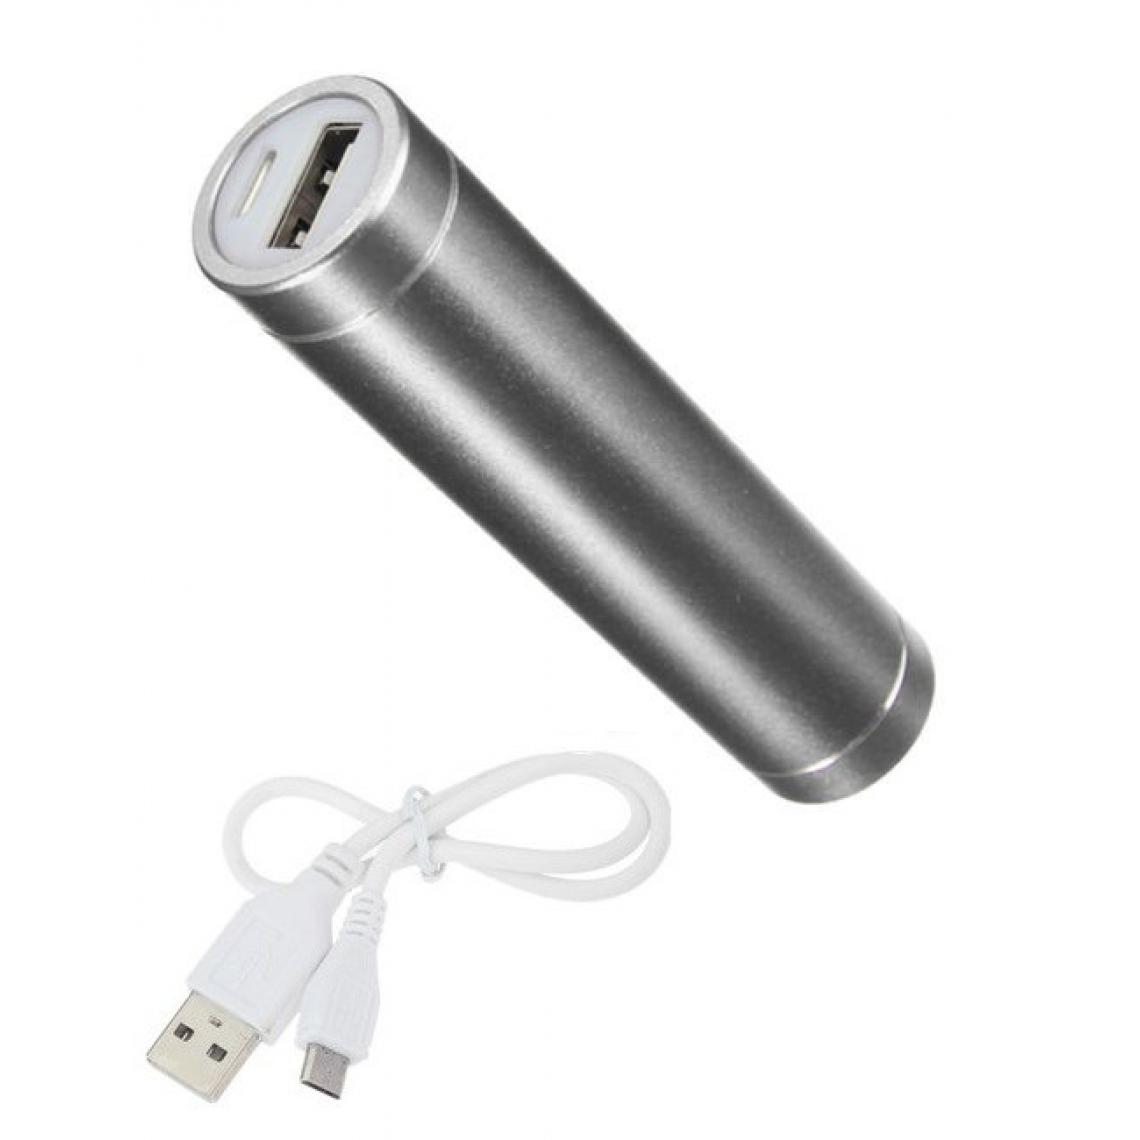 Shot - Batterie Chargeur Externe pour "IPHONE 12 Pro" Power Bank 2600mAh avec Cable USB/Mirco USB Secours Telephone (ARGENT) - Chargeur secteur téléphone